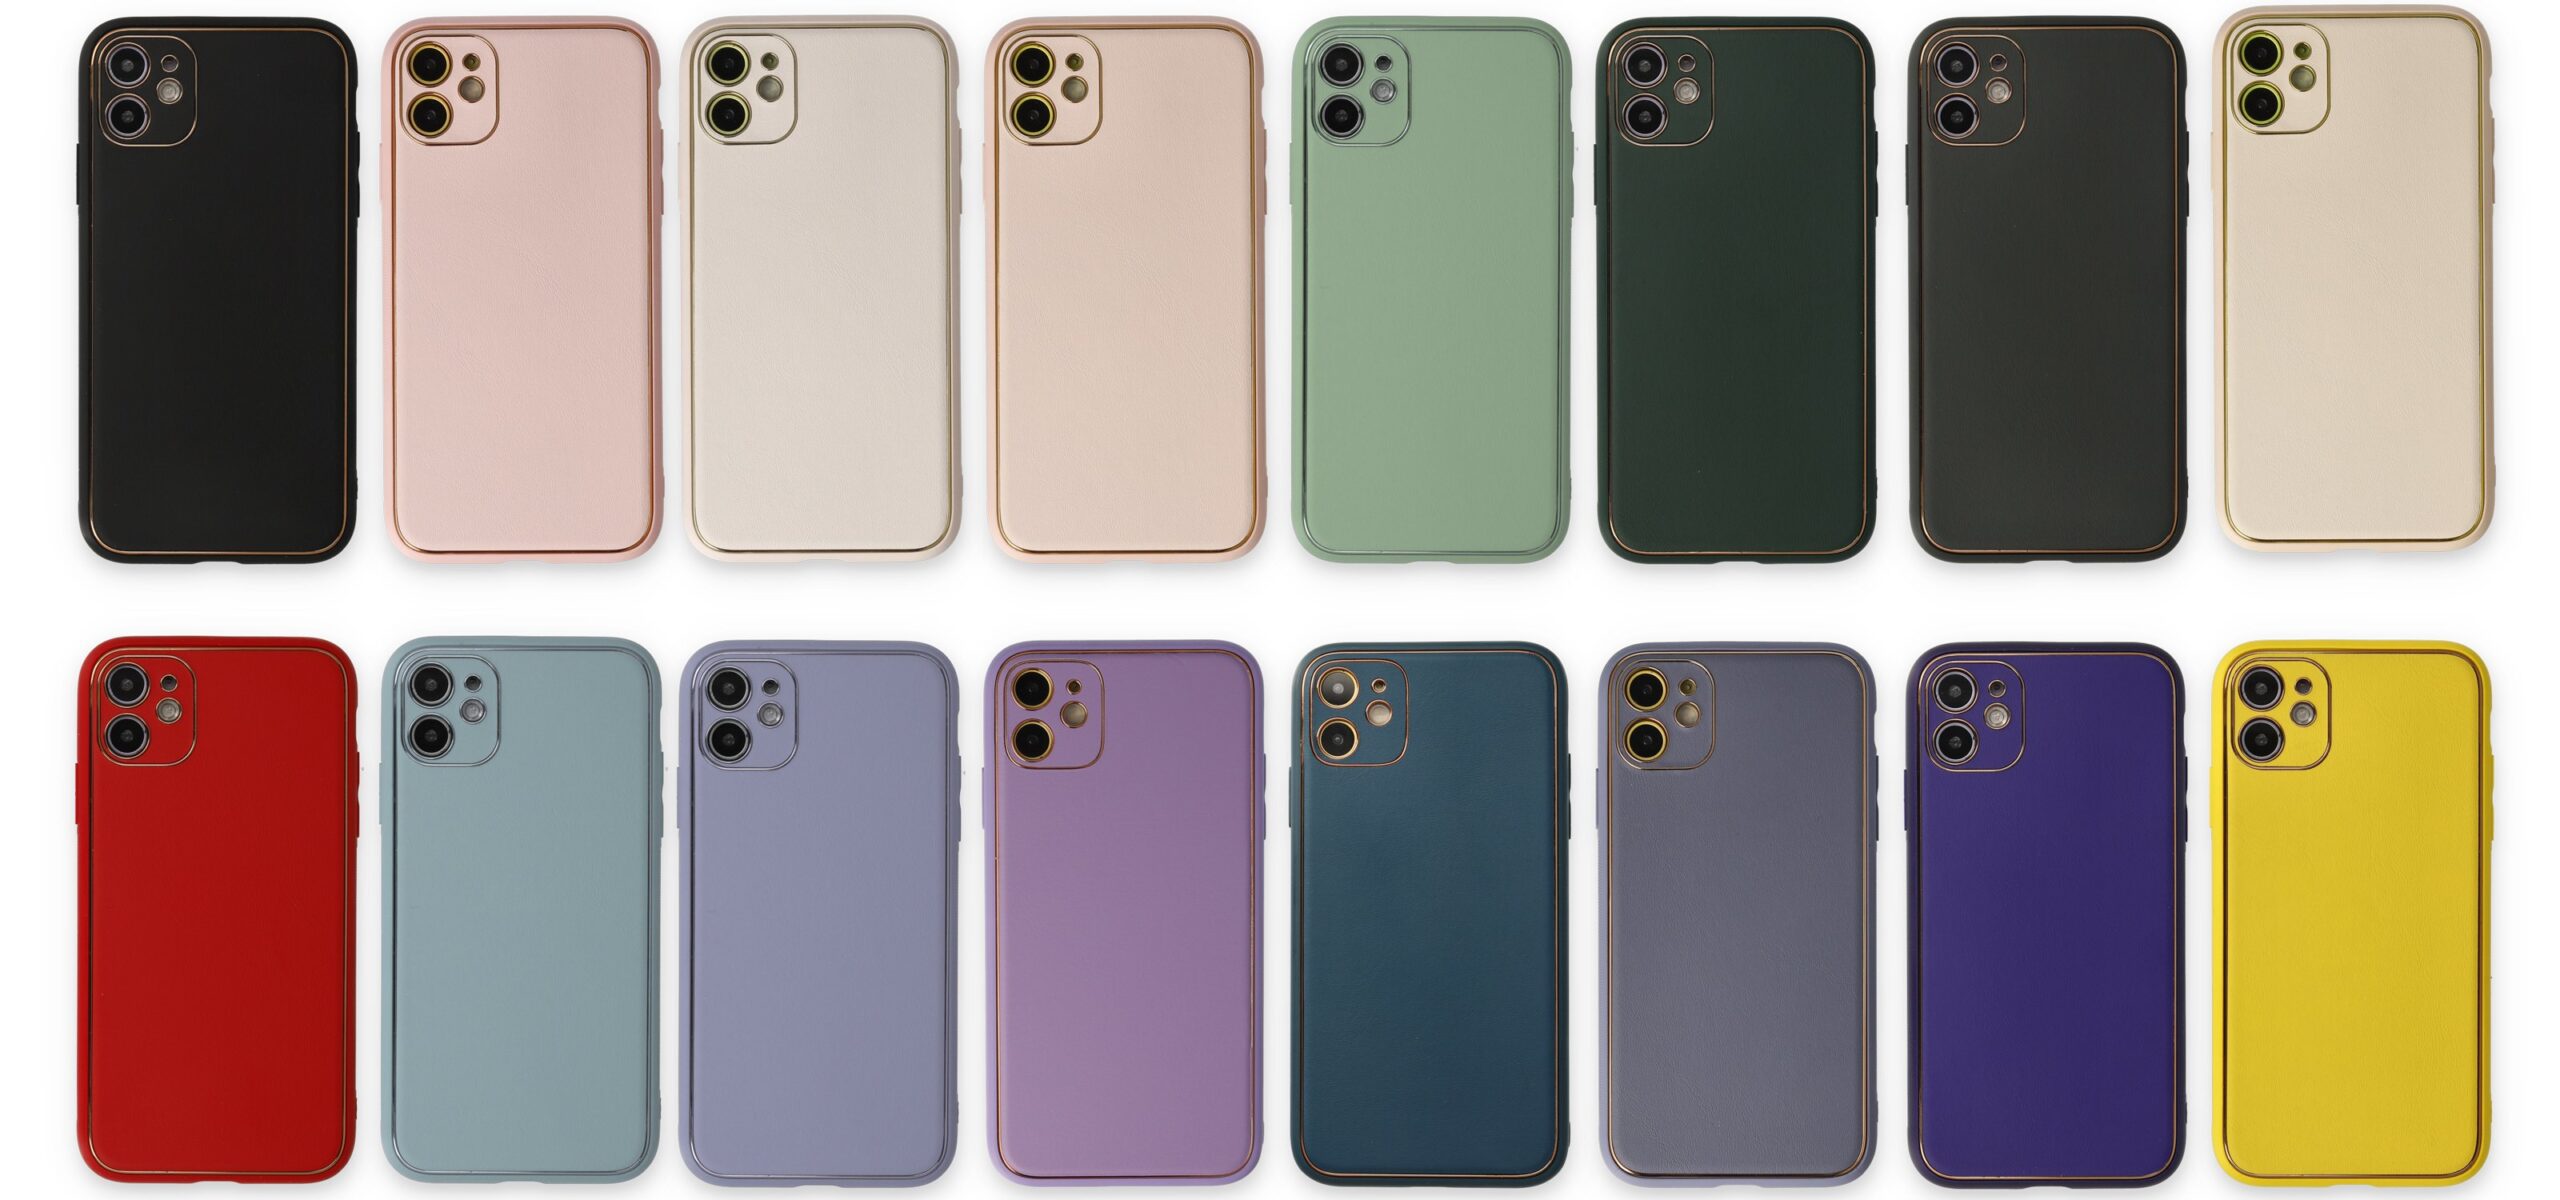 iPhone 13 Pro Max Case Coco Leather Silicone Cover, ტყავის სტრუქტურის ქეისი